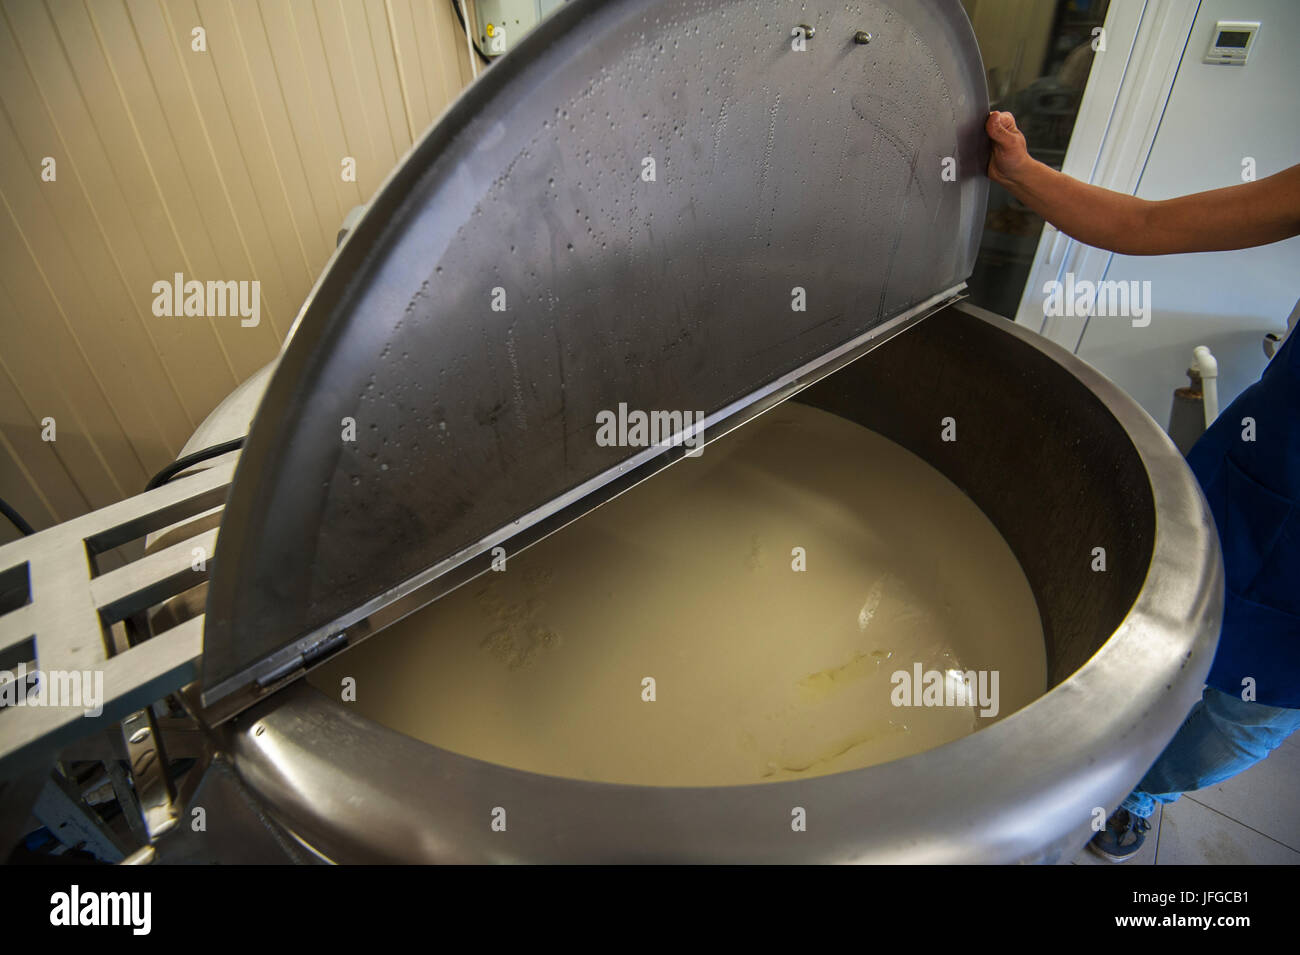 La producción de quesos de granja Foto de stock